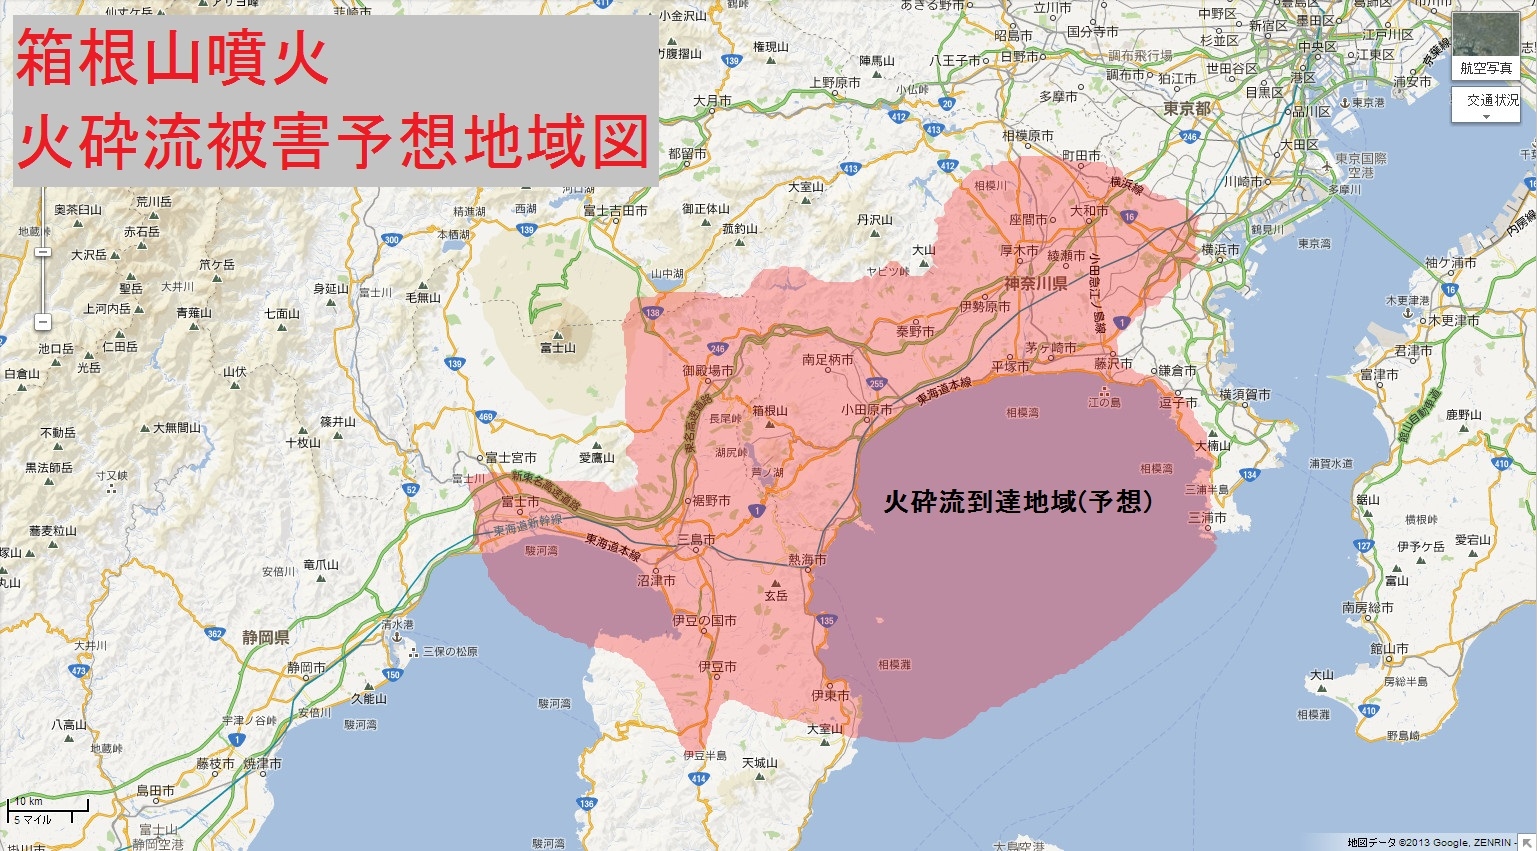 ↑ 「箱根山噴火火砕流被害予想地域図」なるもの